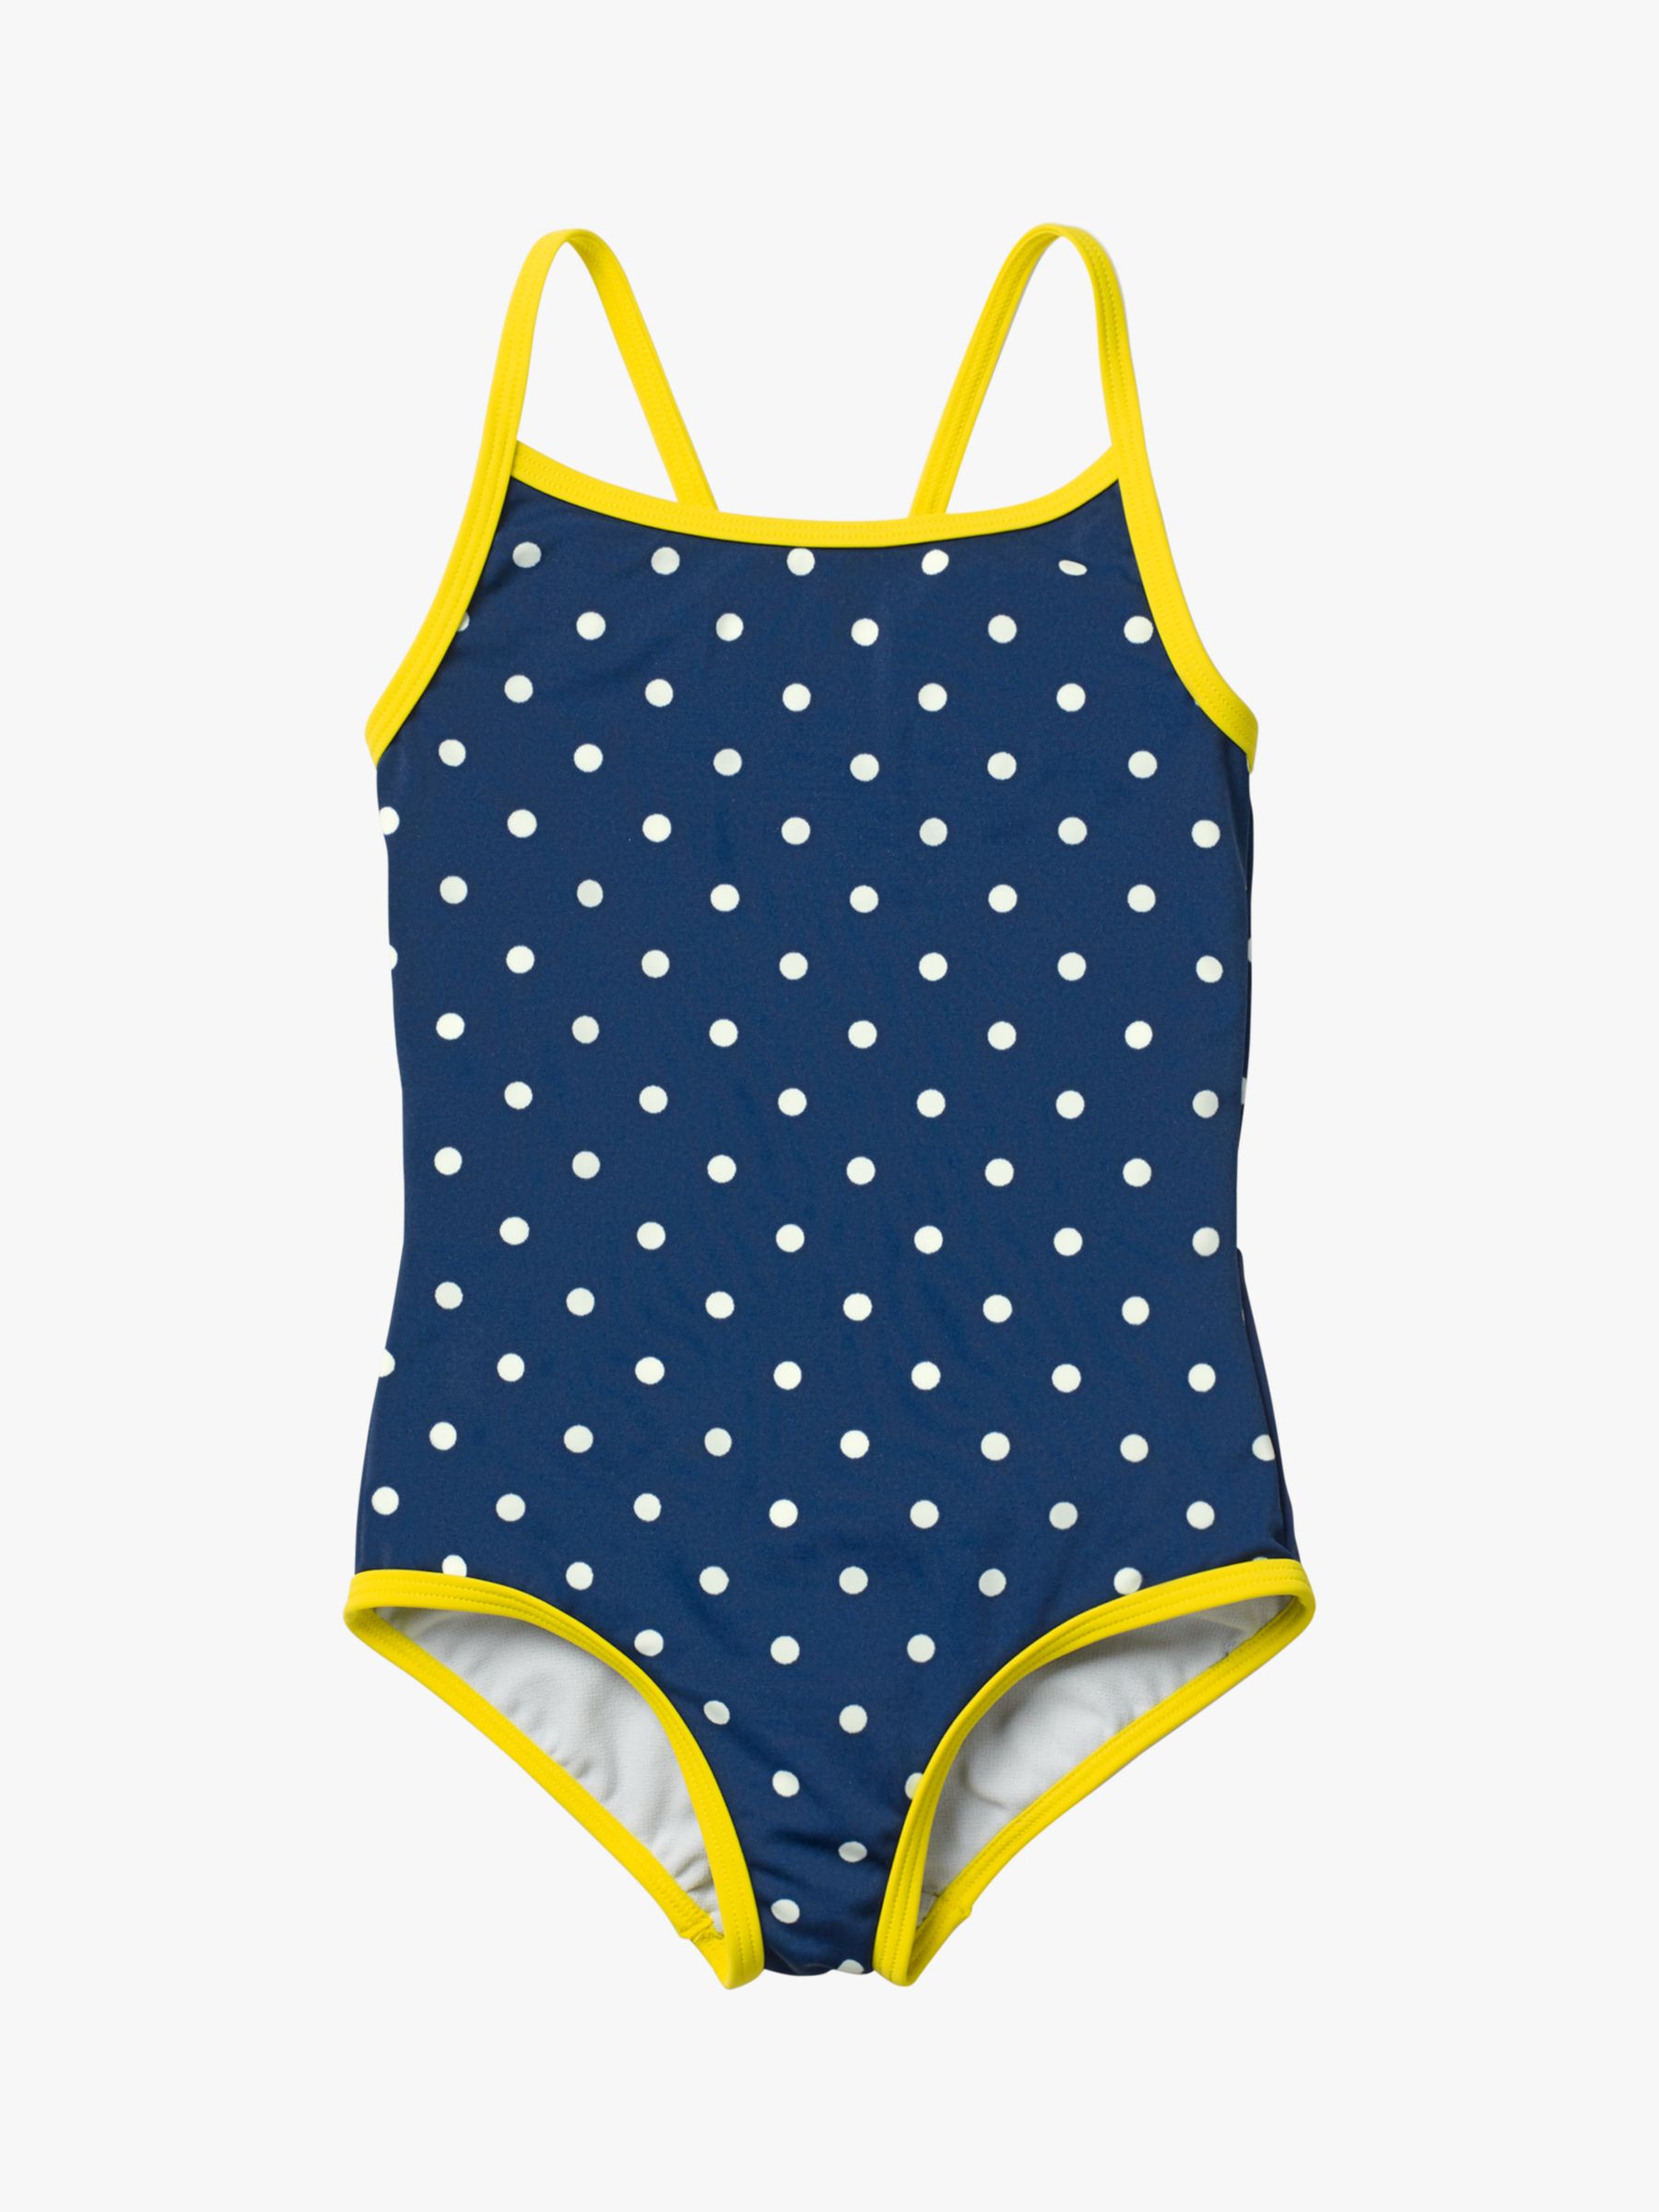 Mini Boden Girls Novelty Bottom Swimsuit Sea Blue Ivory Spot At John